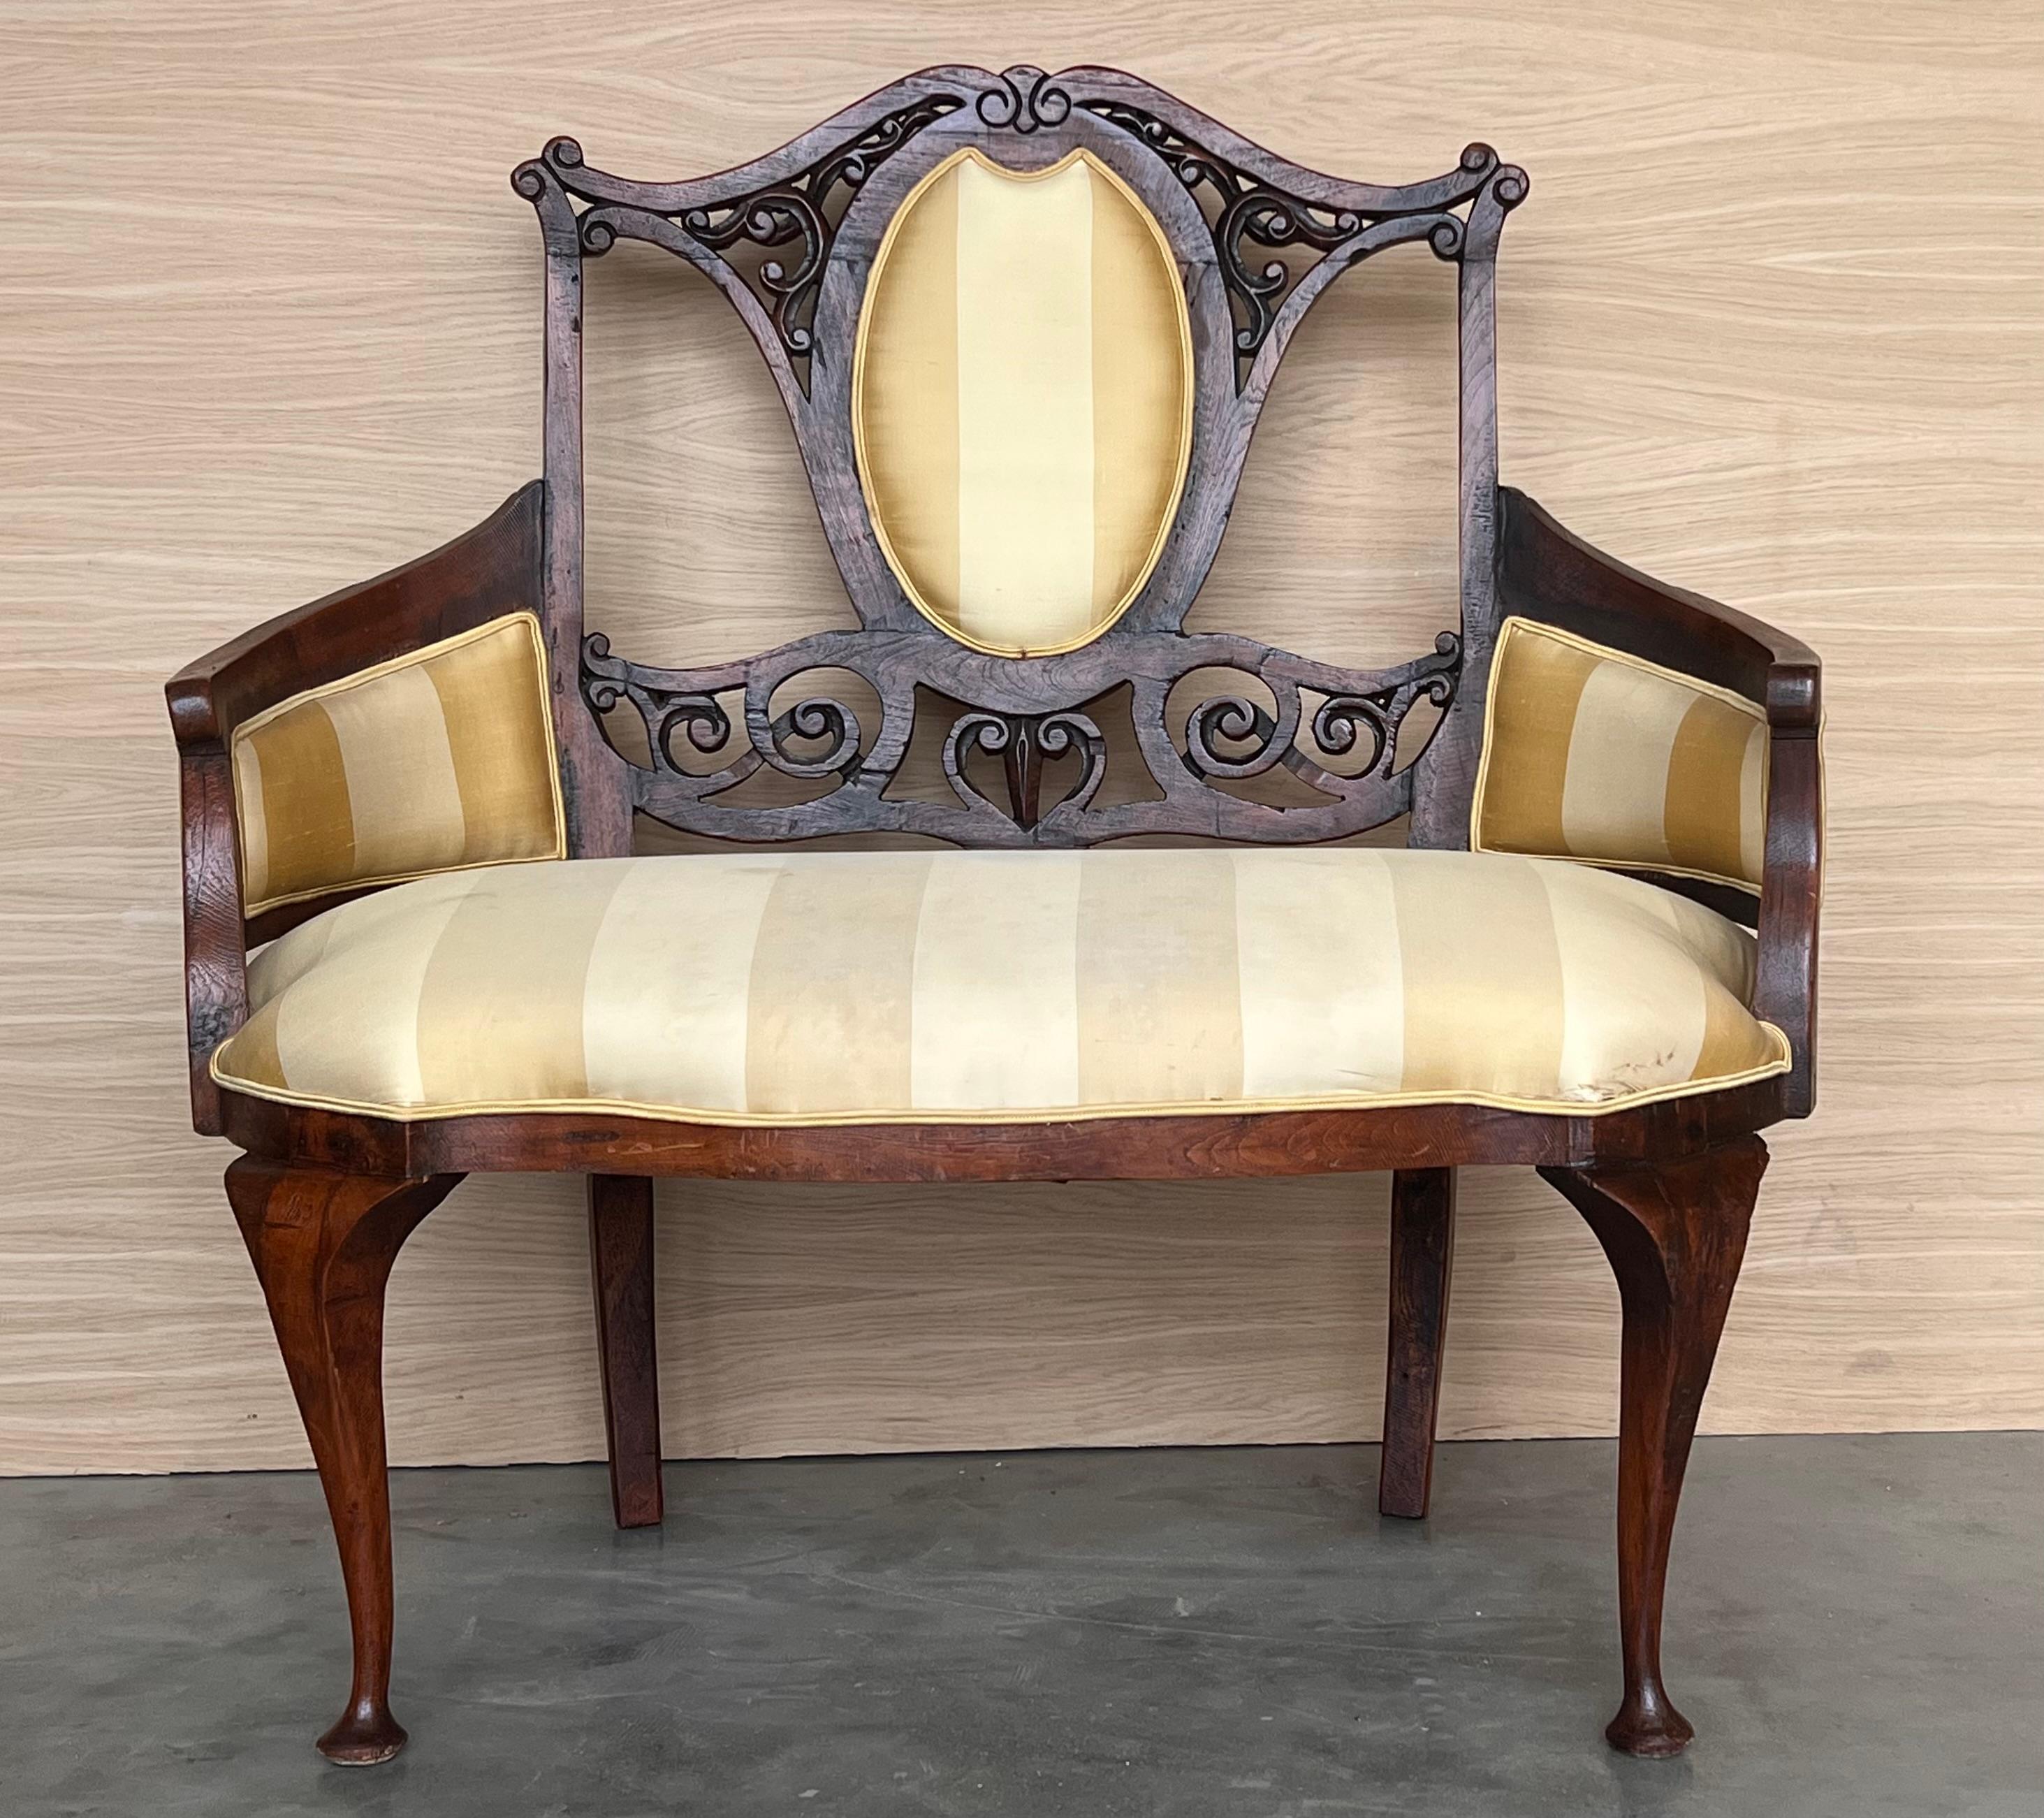 Incroyable Art nouveau  prix de 2 fauteuils canapés  
MATERIAL : Bois, rembourré avec des ressorts et un élastique (comme autrefois) Si vous avez des questions, nous sommes à votre disposition. 

Le nom 